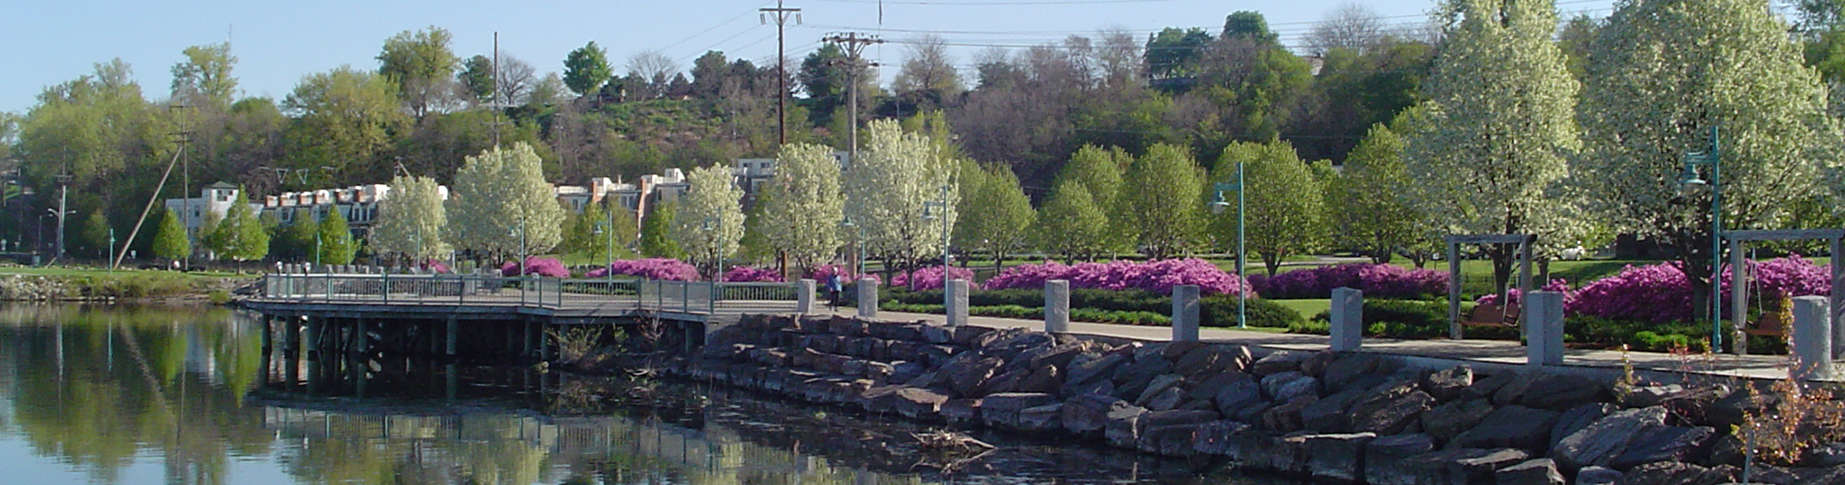 Burlington Parks & Rec - Waterfront Park